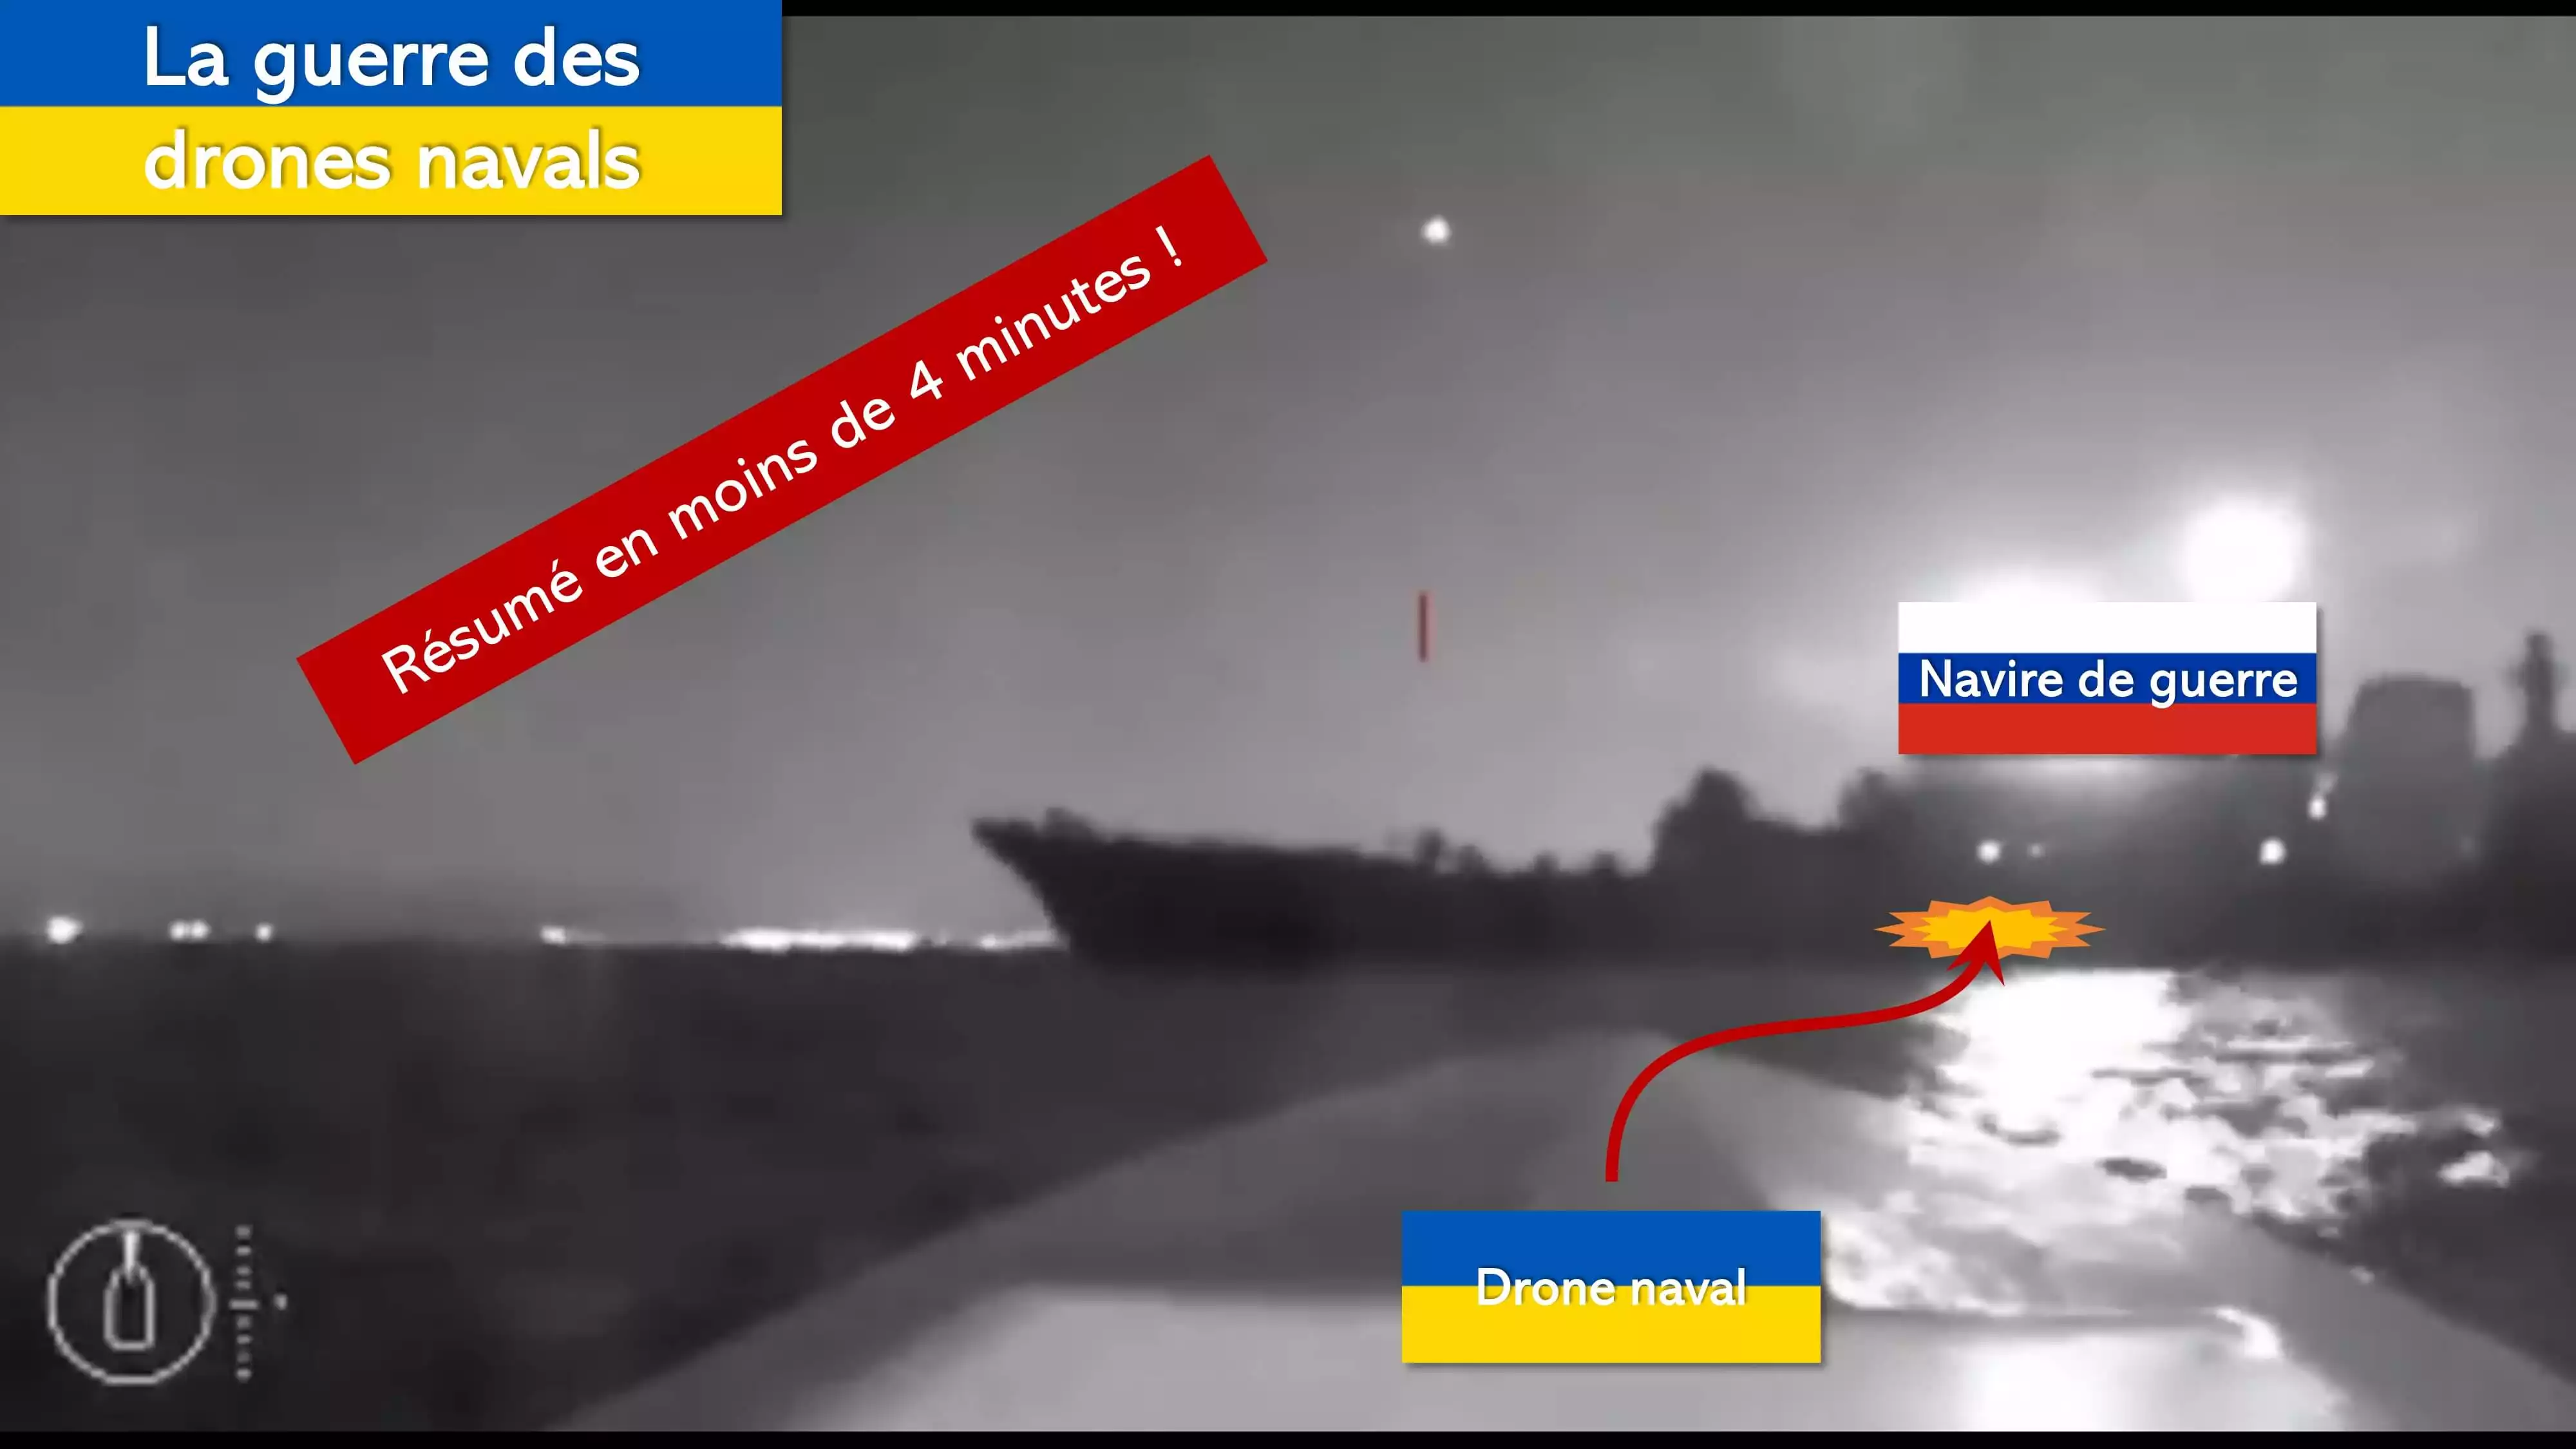 Ukraine : résumé de la guerre des drones navals en moins de 4 minutes